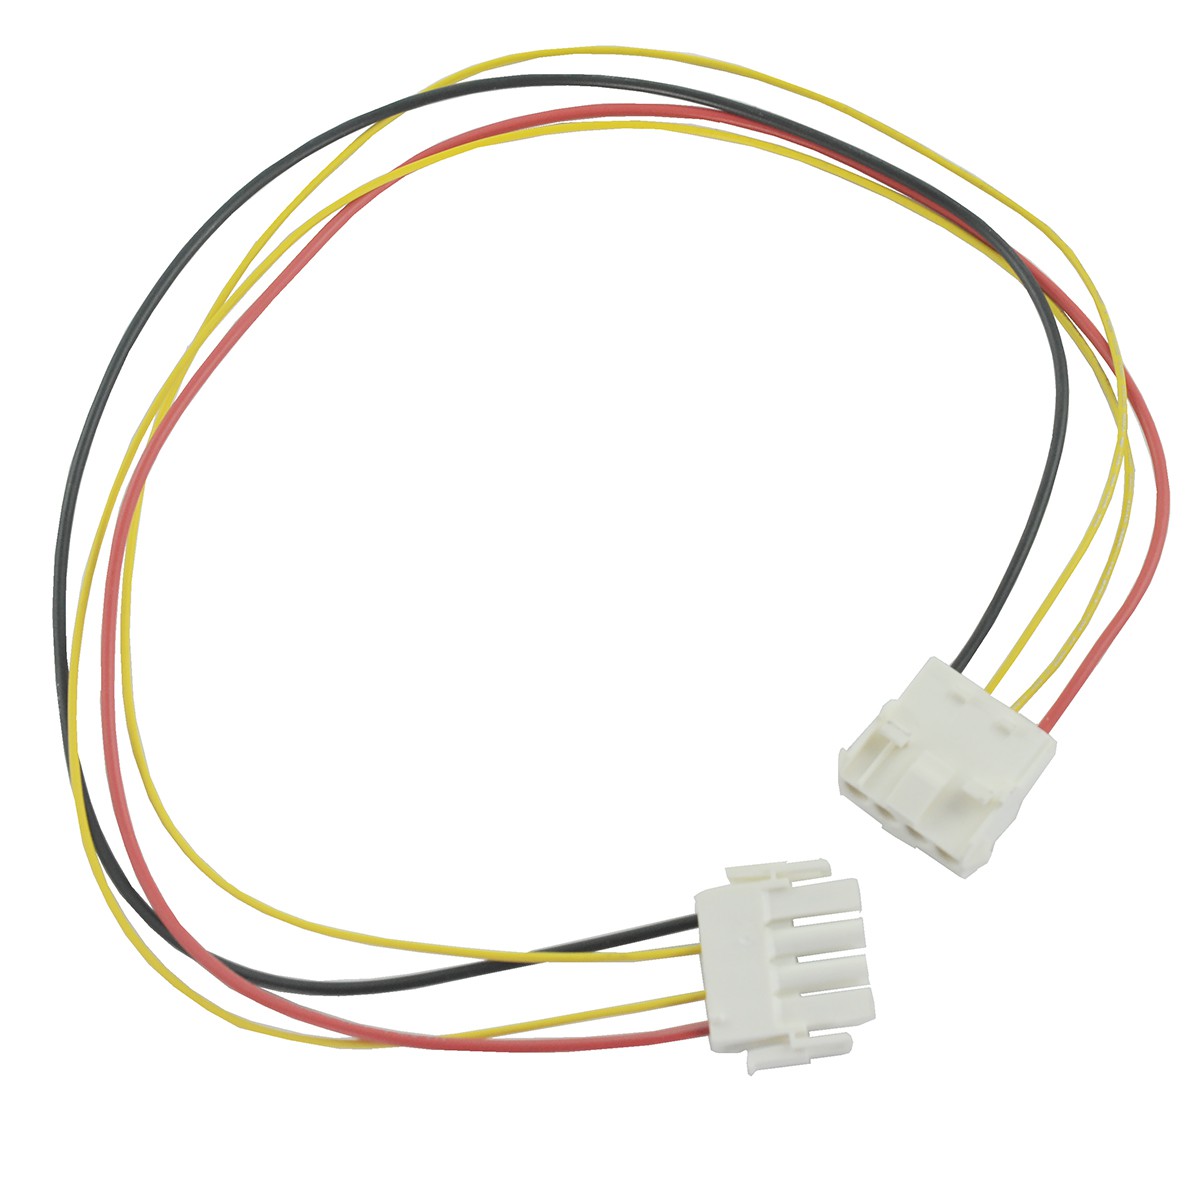 AL-KO / ROBOLINHO / 442632 battery cable harness